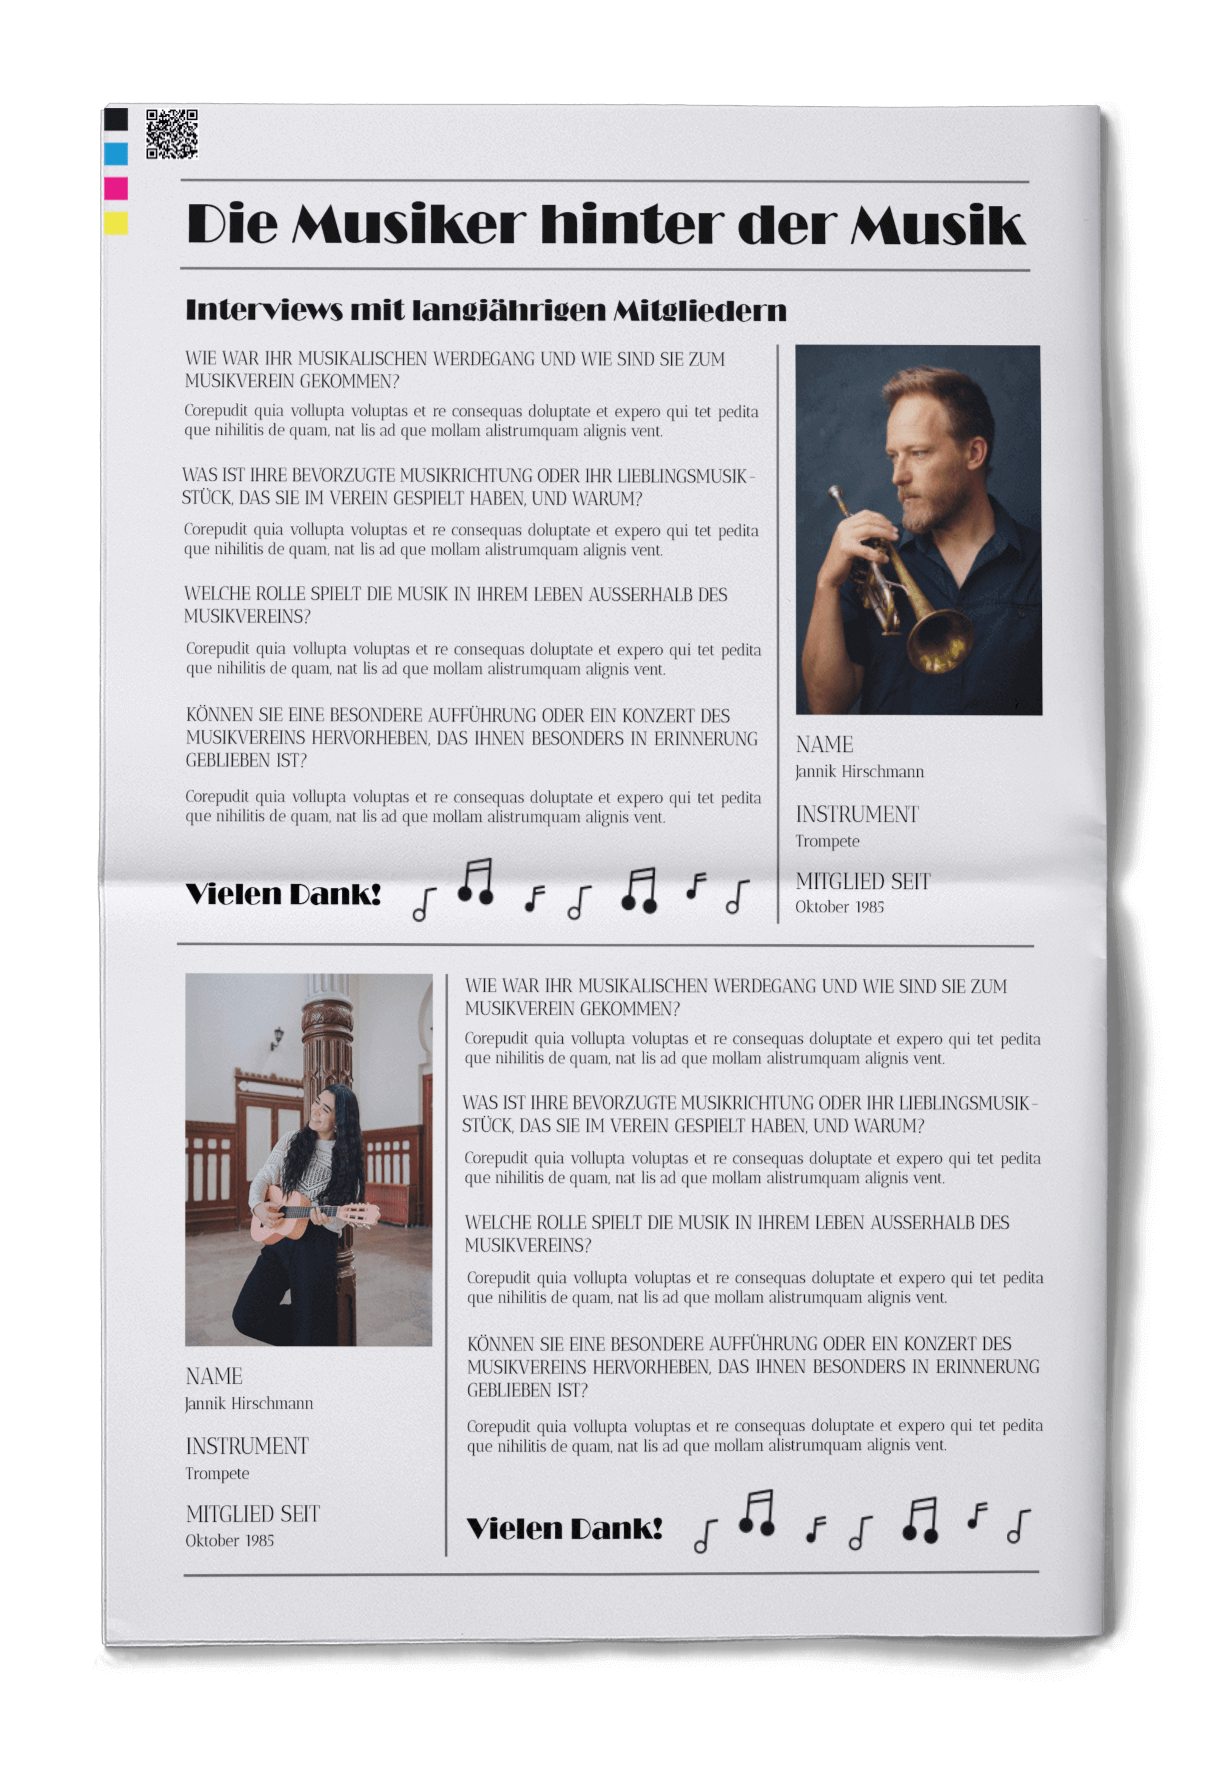 Festzeitung für Musikverein mit Vorlage für Steckbrief